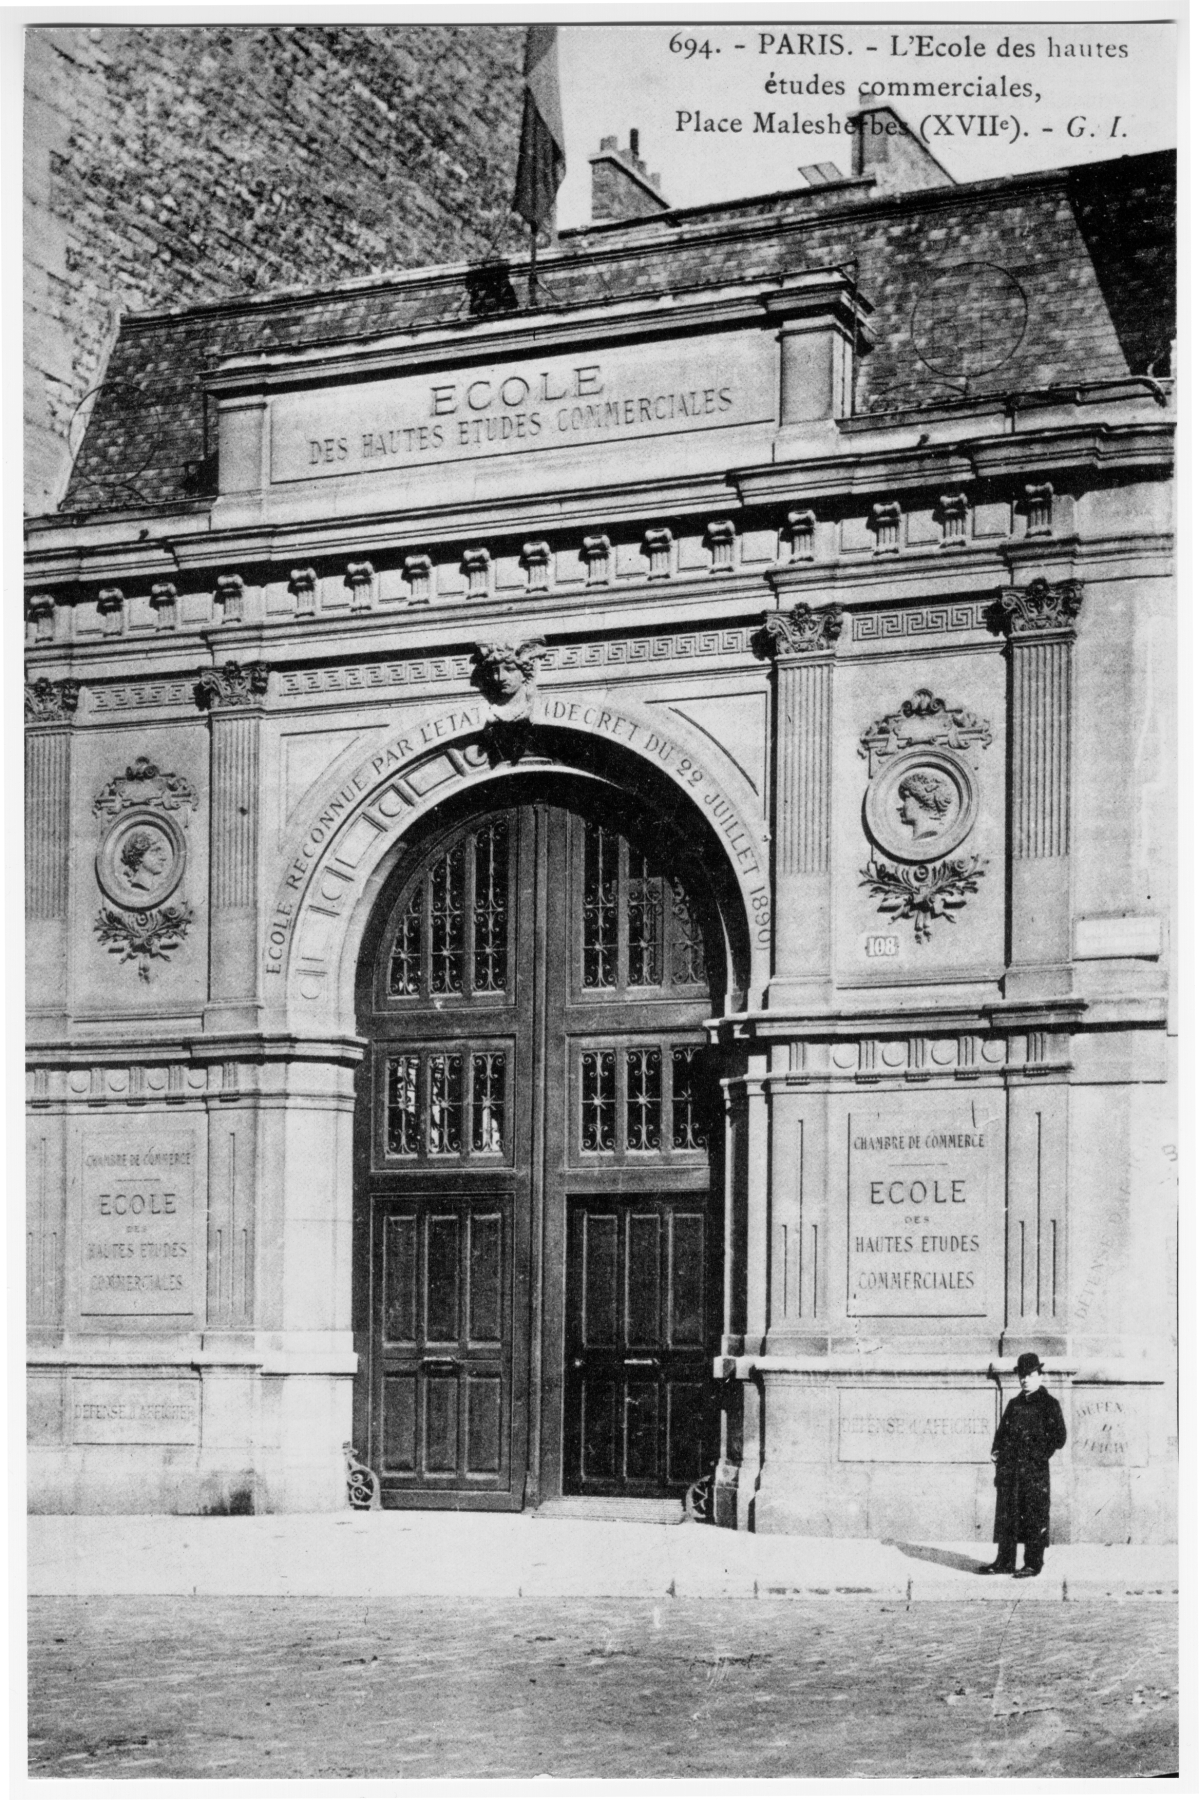 L'Ecole des hautes etudes commerciales. Place Malsherbes. Paris XVII